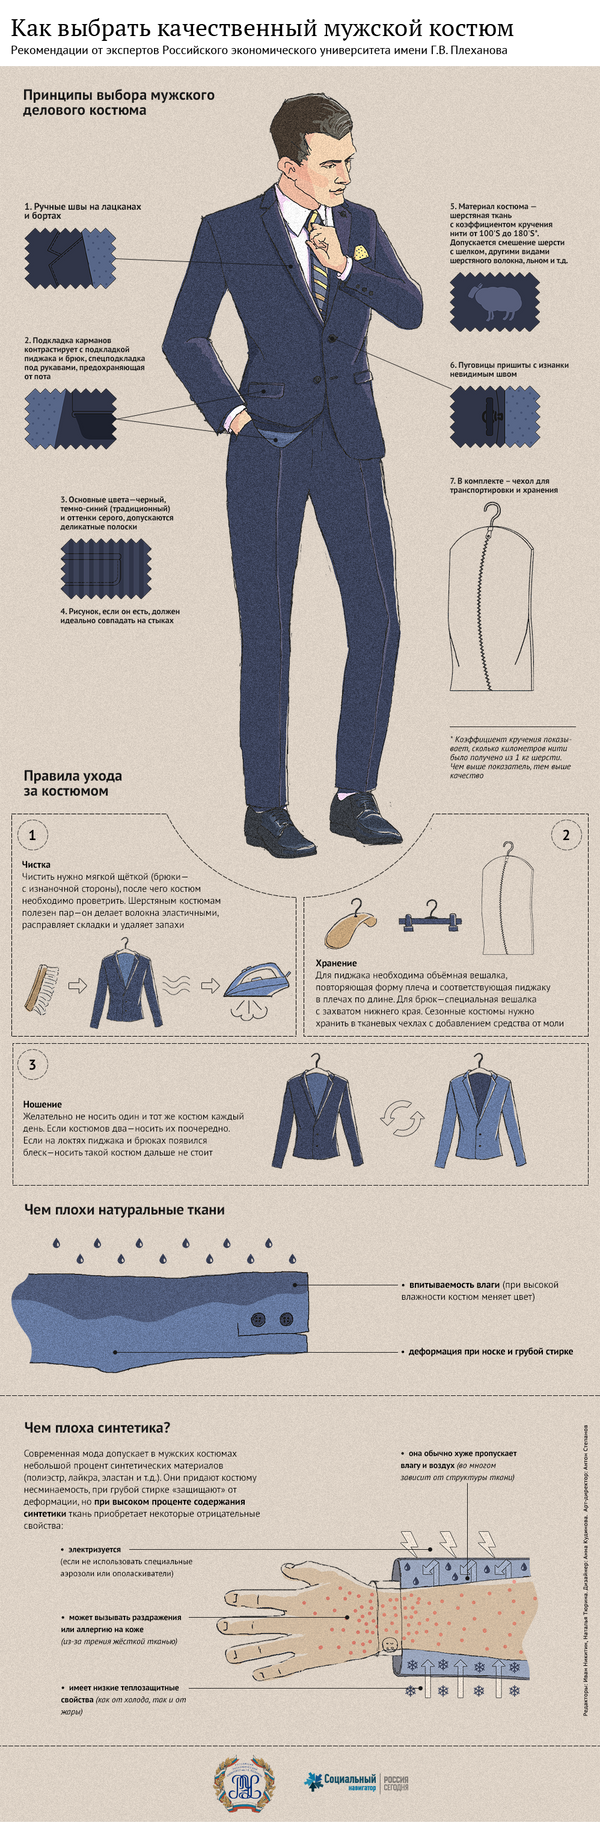 Инфографика: Как правильно выбрать мужской деловой костюм - Sputnik Казахстан